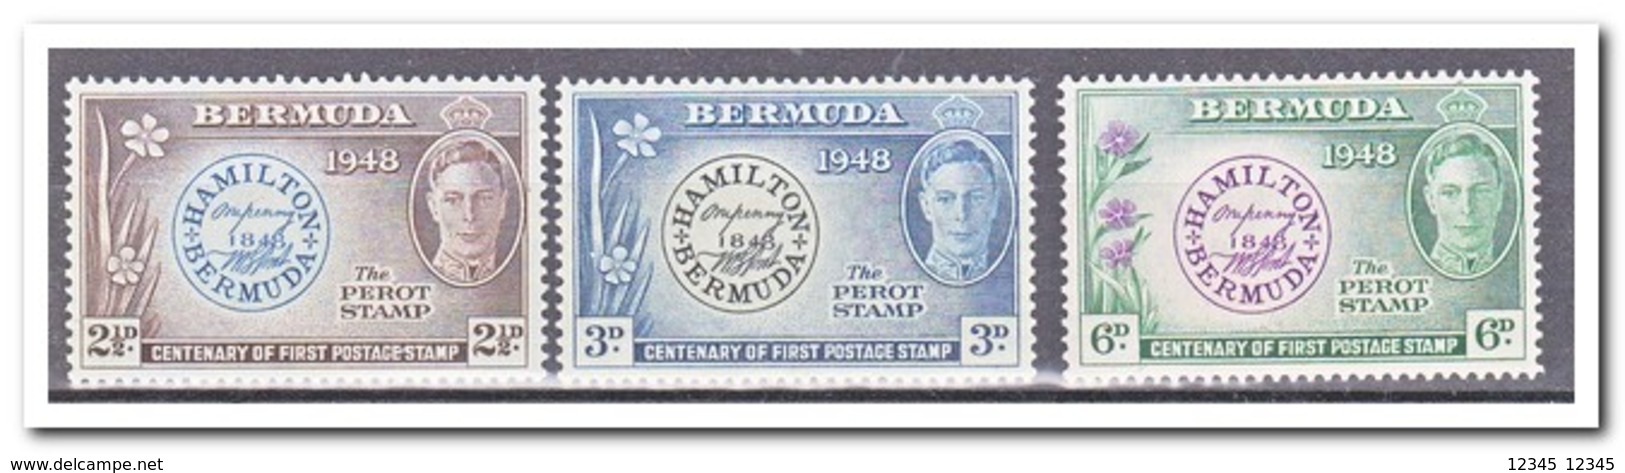 Bermuda 1949, Postfris MNH, Flowers, The Perot Stamp - Bermuda